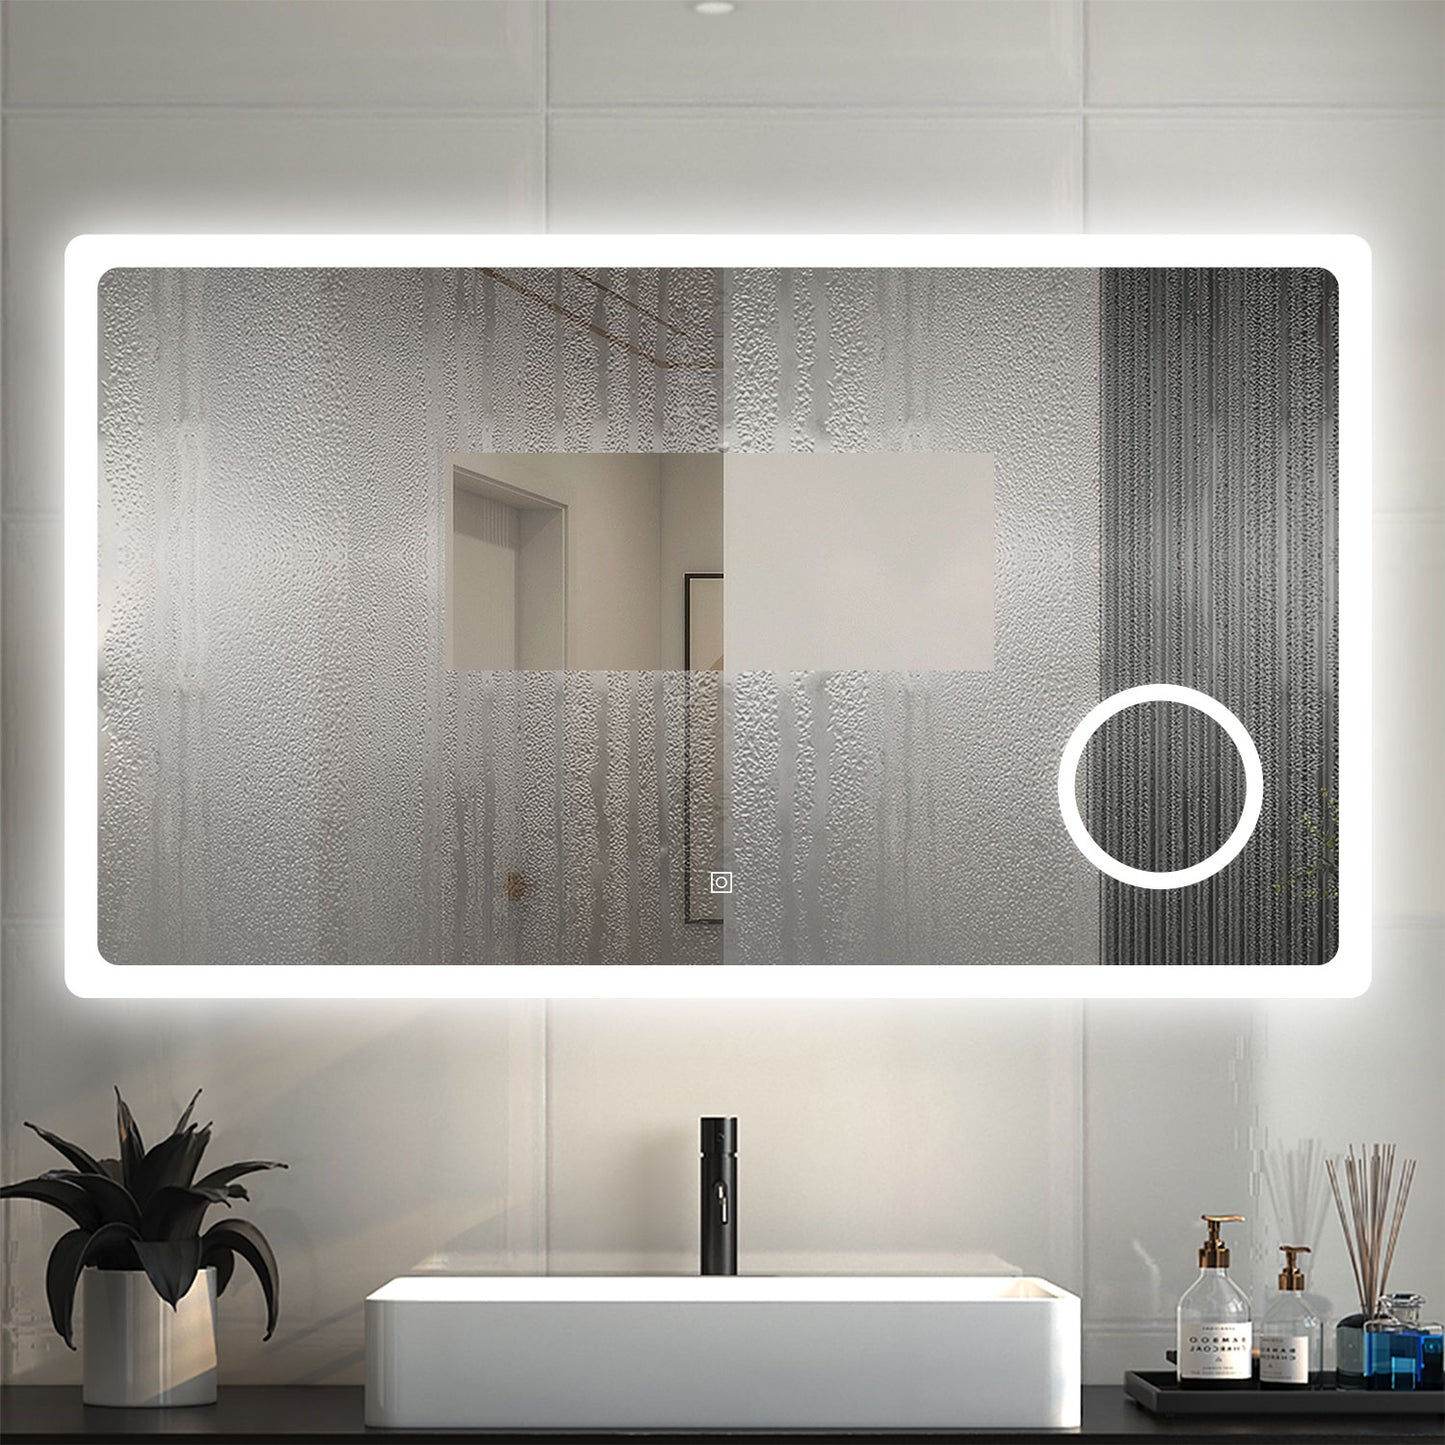 120x70 cm Badspiegel LED Beleuchtung Kalt/Neutral/Warmweiß Dimmbar Beschlagfrei, 3x LED Schminkspiegel+Touch+Wandschalter